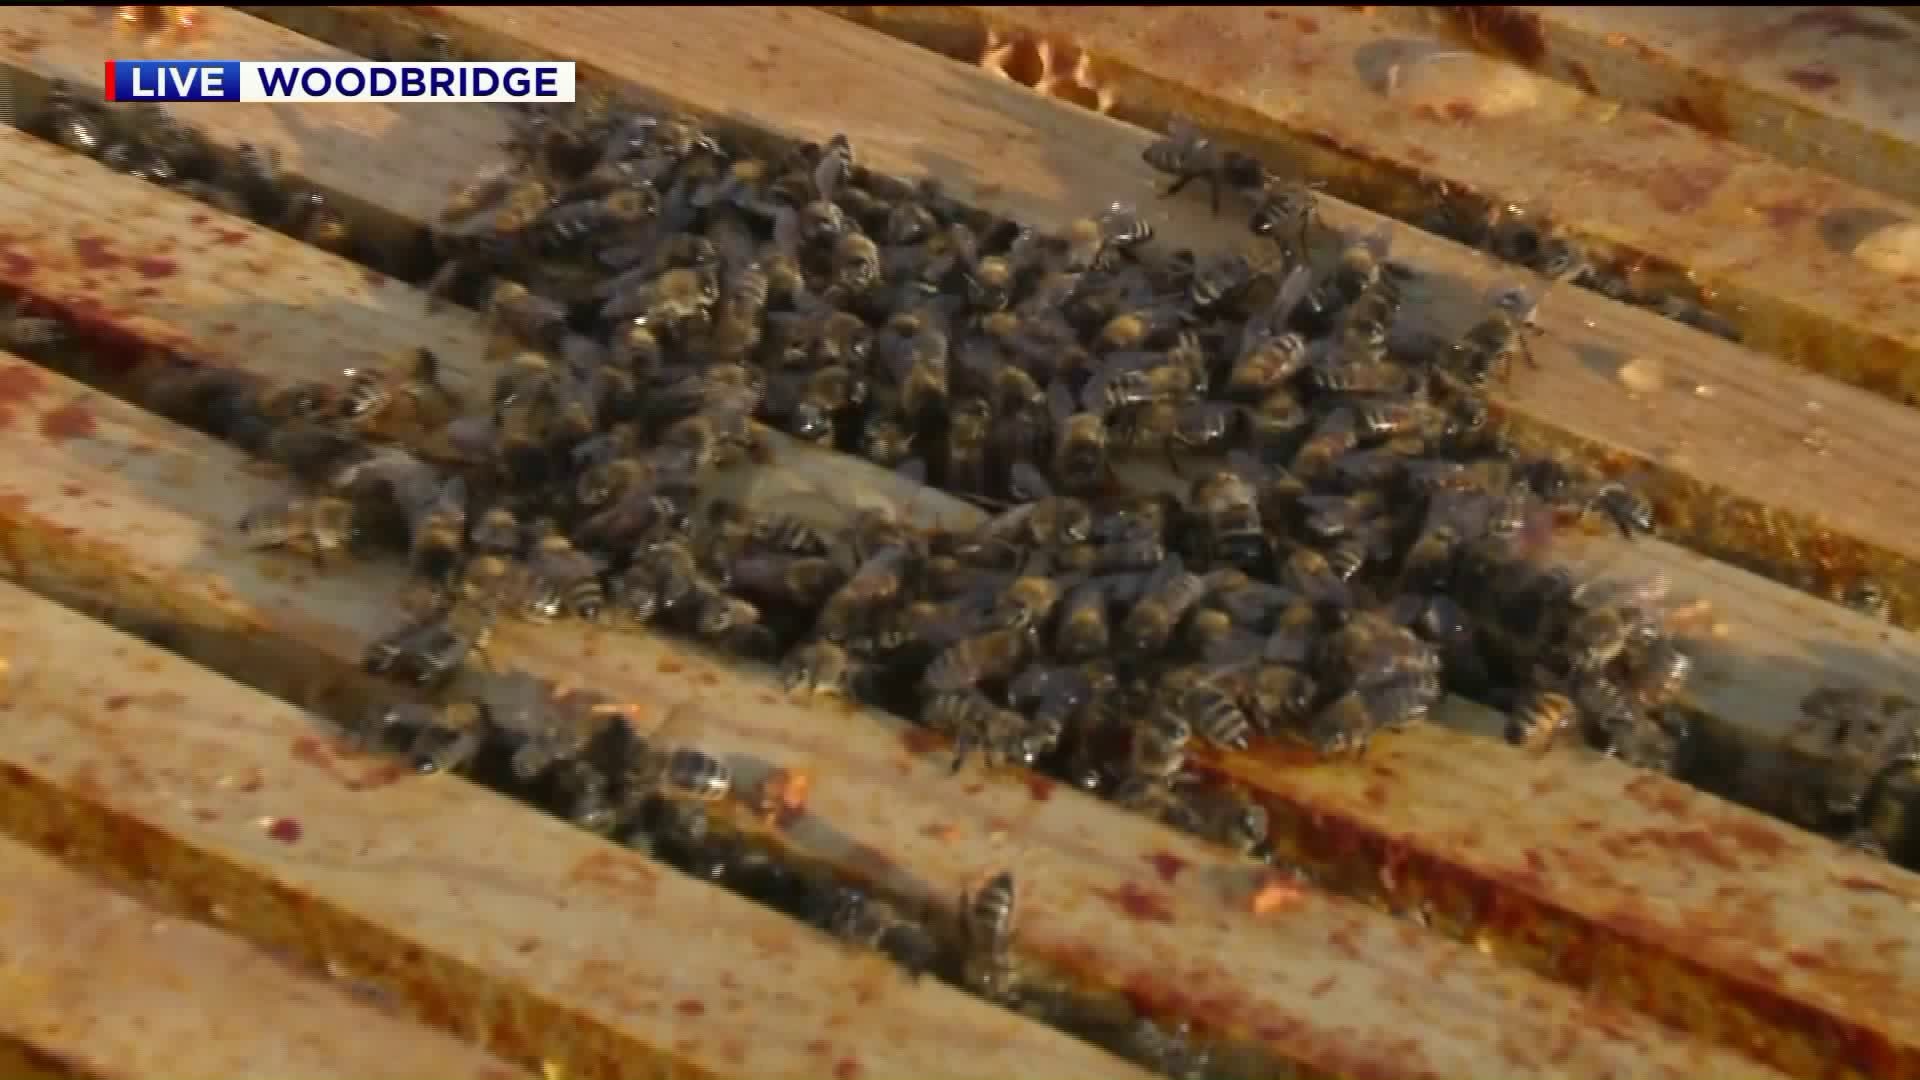 Bees in Woodbridge